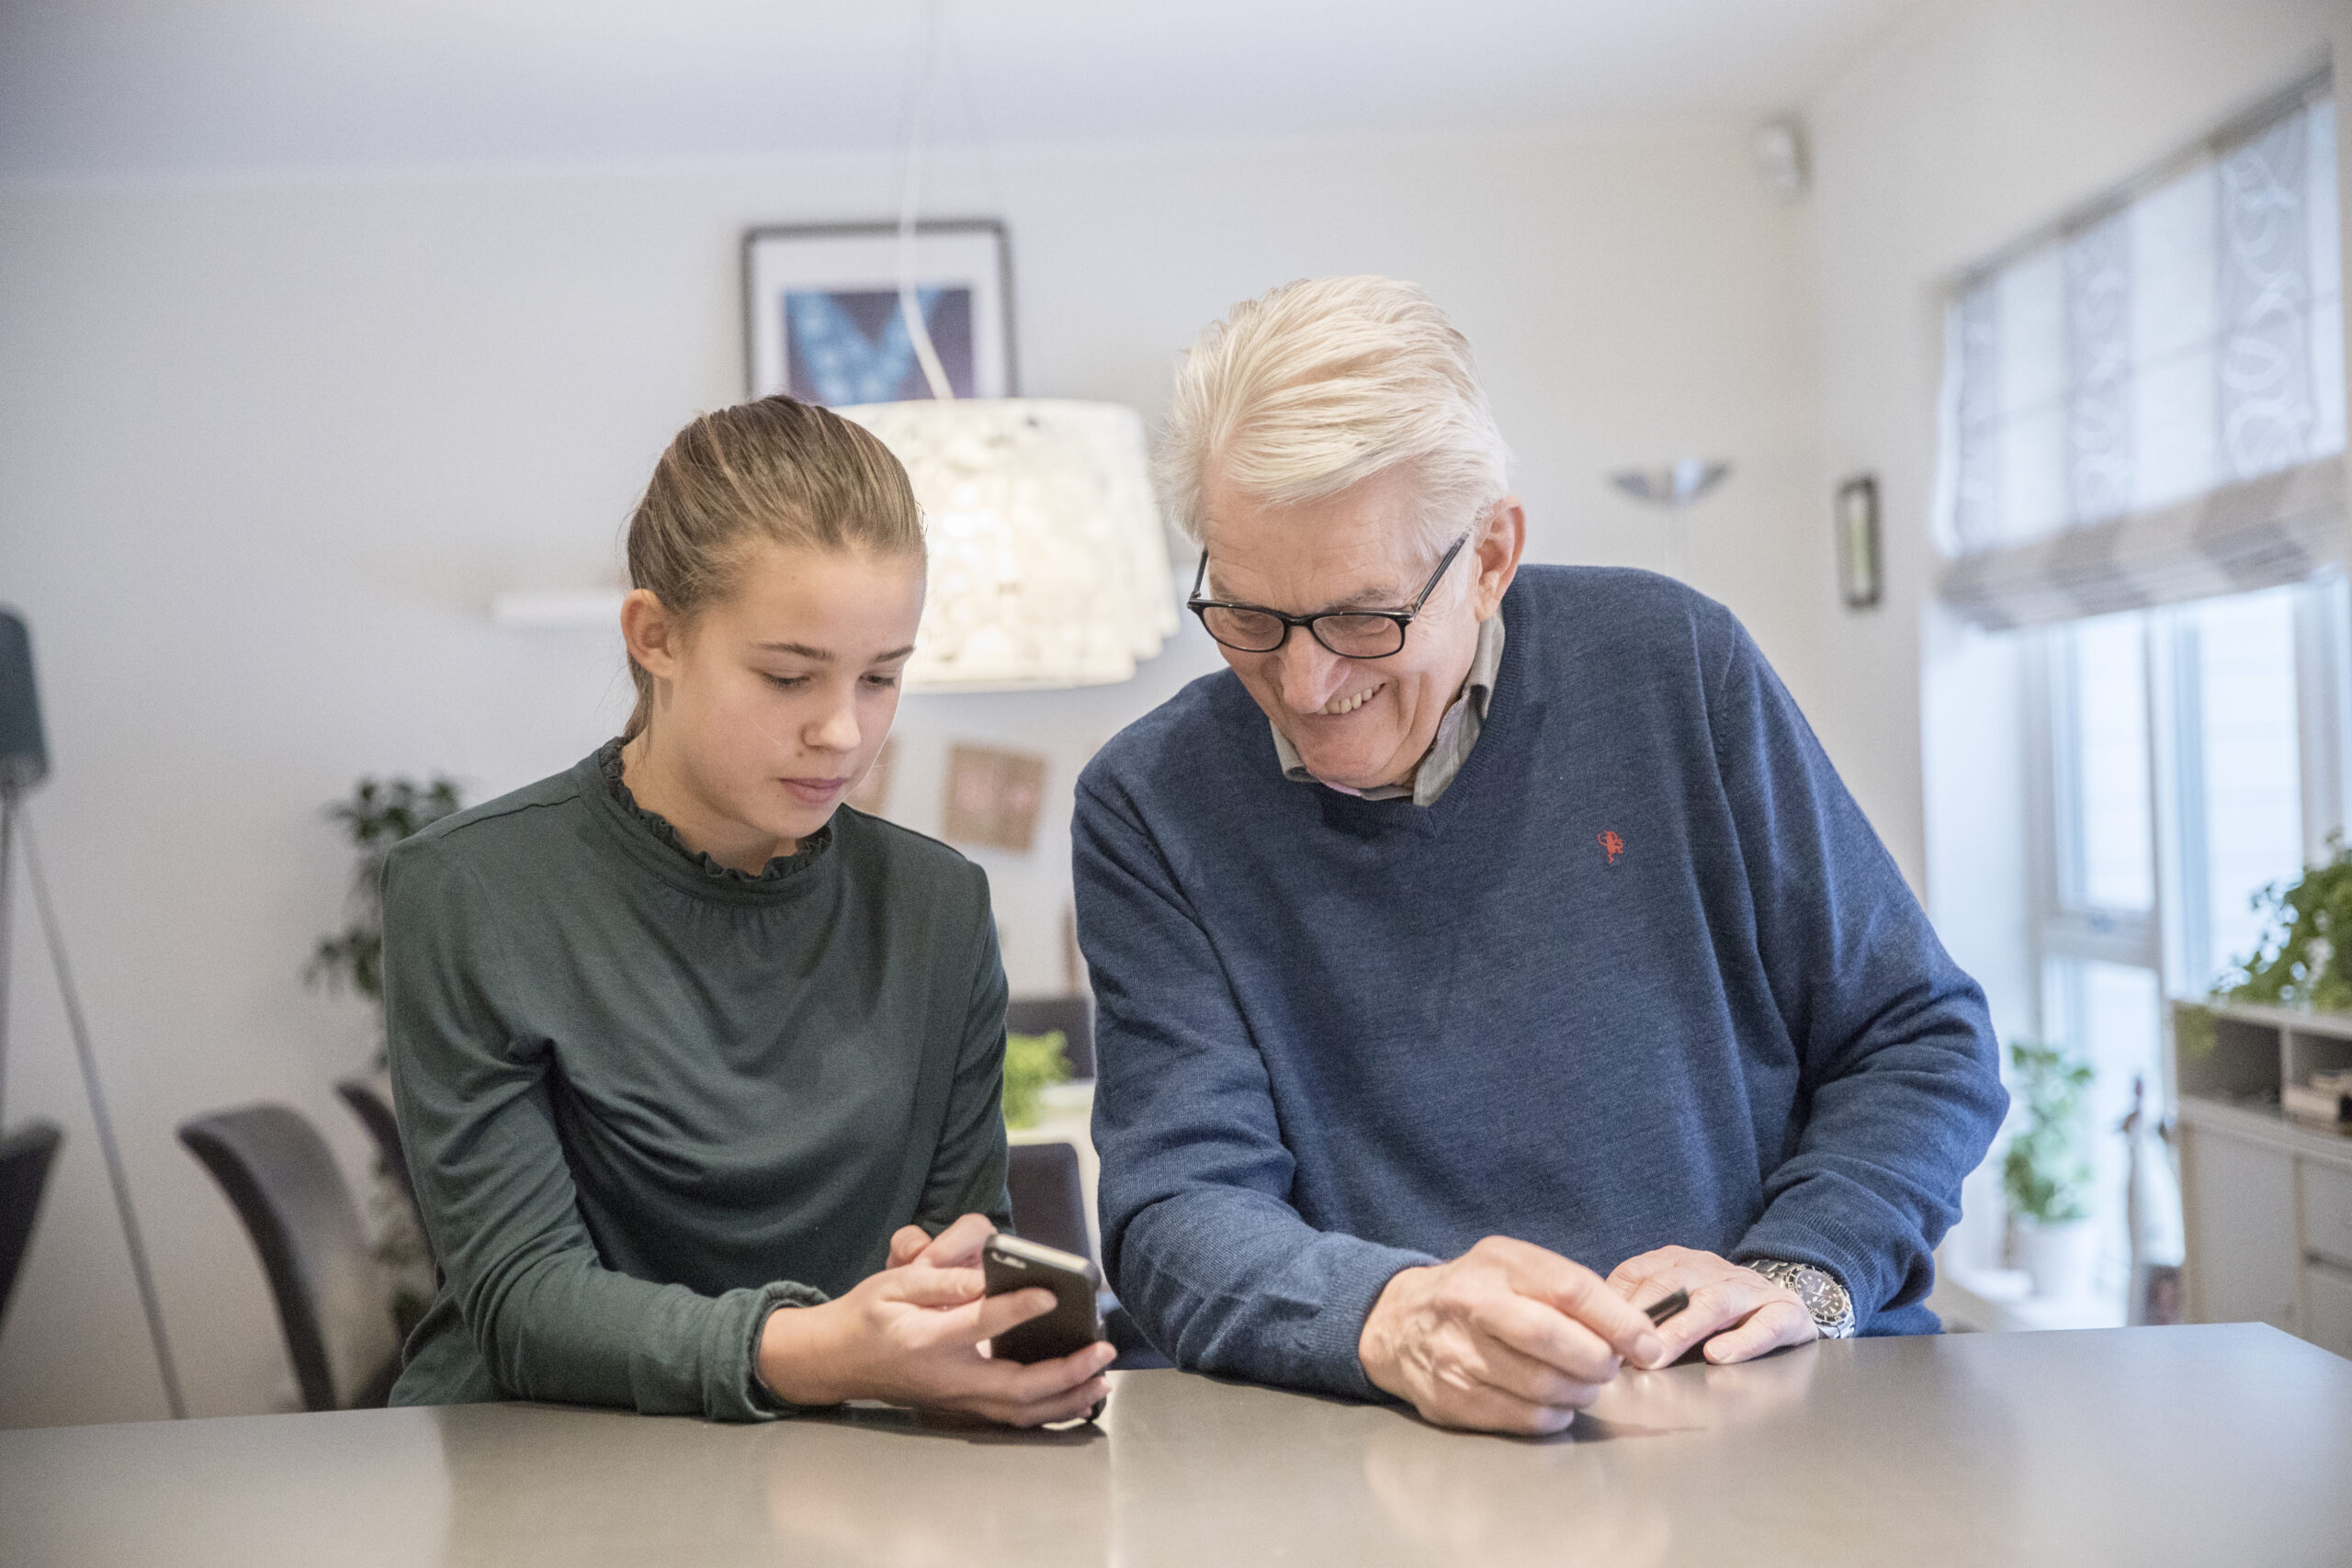 En ung jente viser en eldre mann skjermen på sin mobiltelefon, sittende på kjøkkenet.